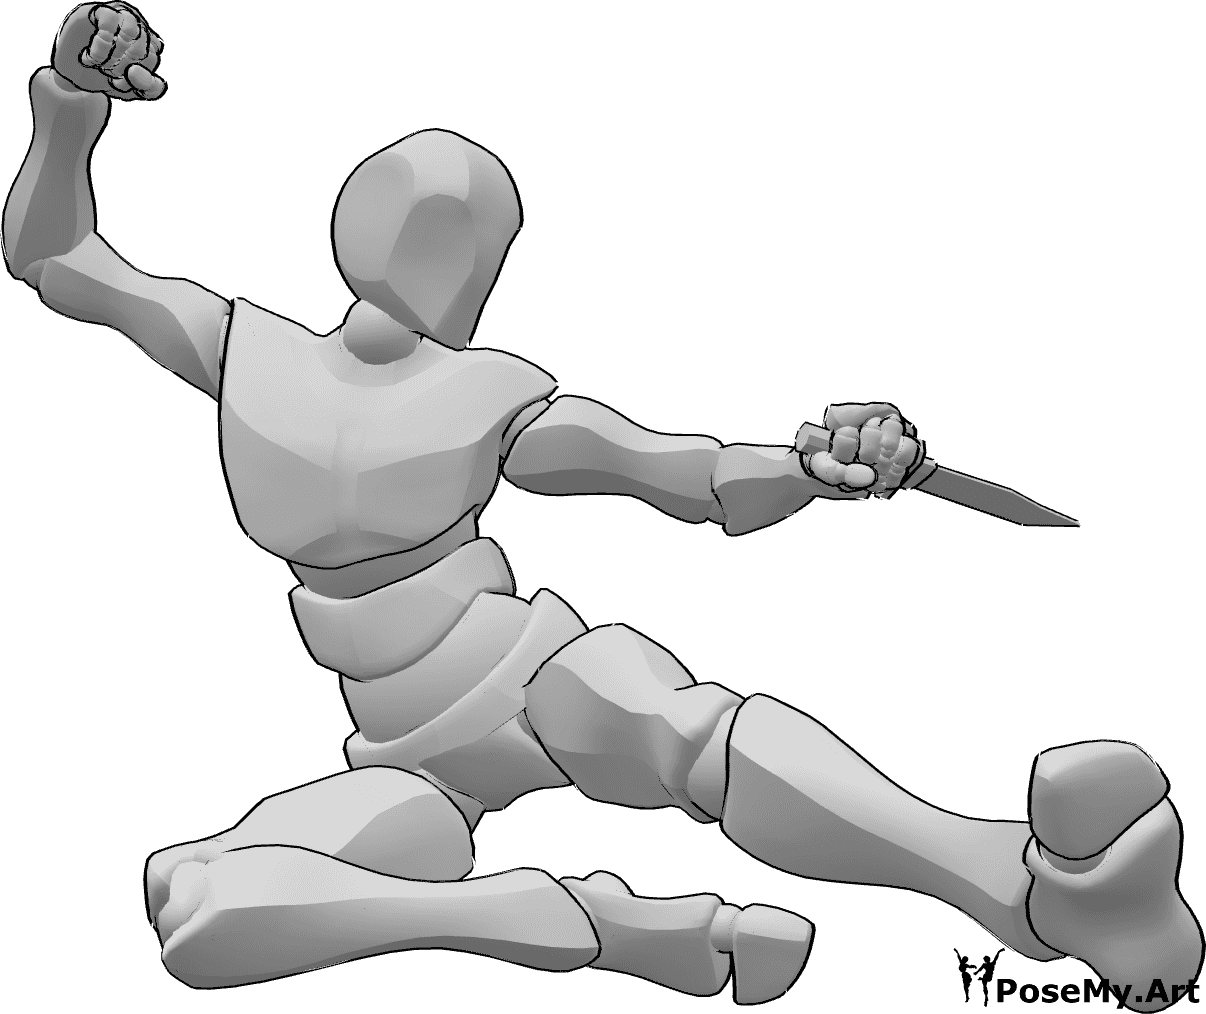 Riferimento alle pose- Posa d'attacco con calcio laterale - L'uomo attacca, saltando in alto e tirando calci laterali, tenendo in mano un pugnale.